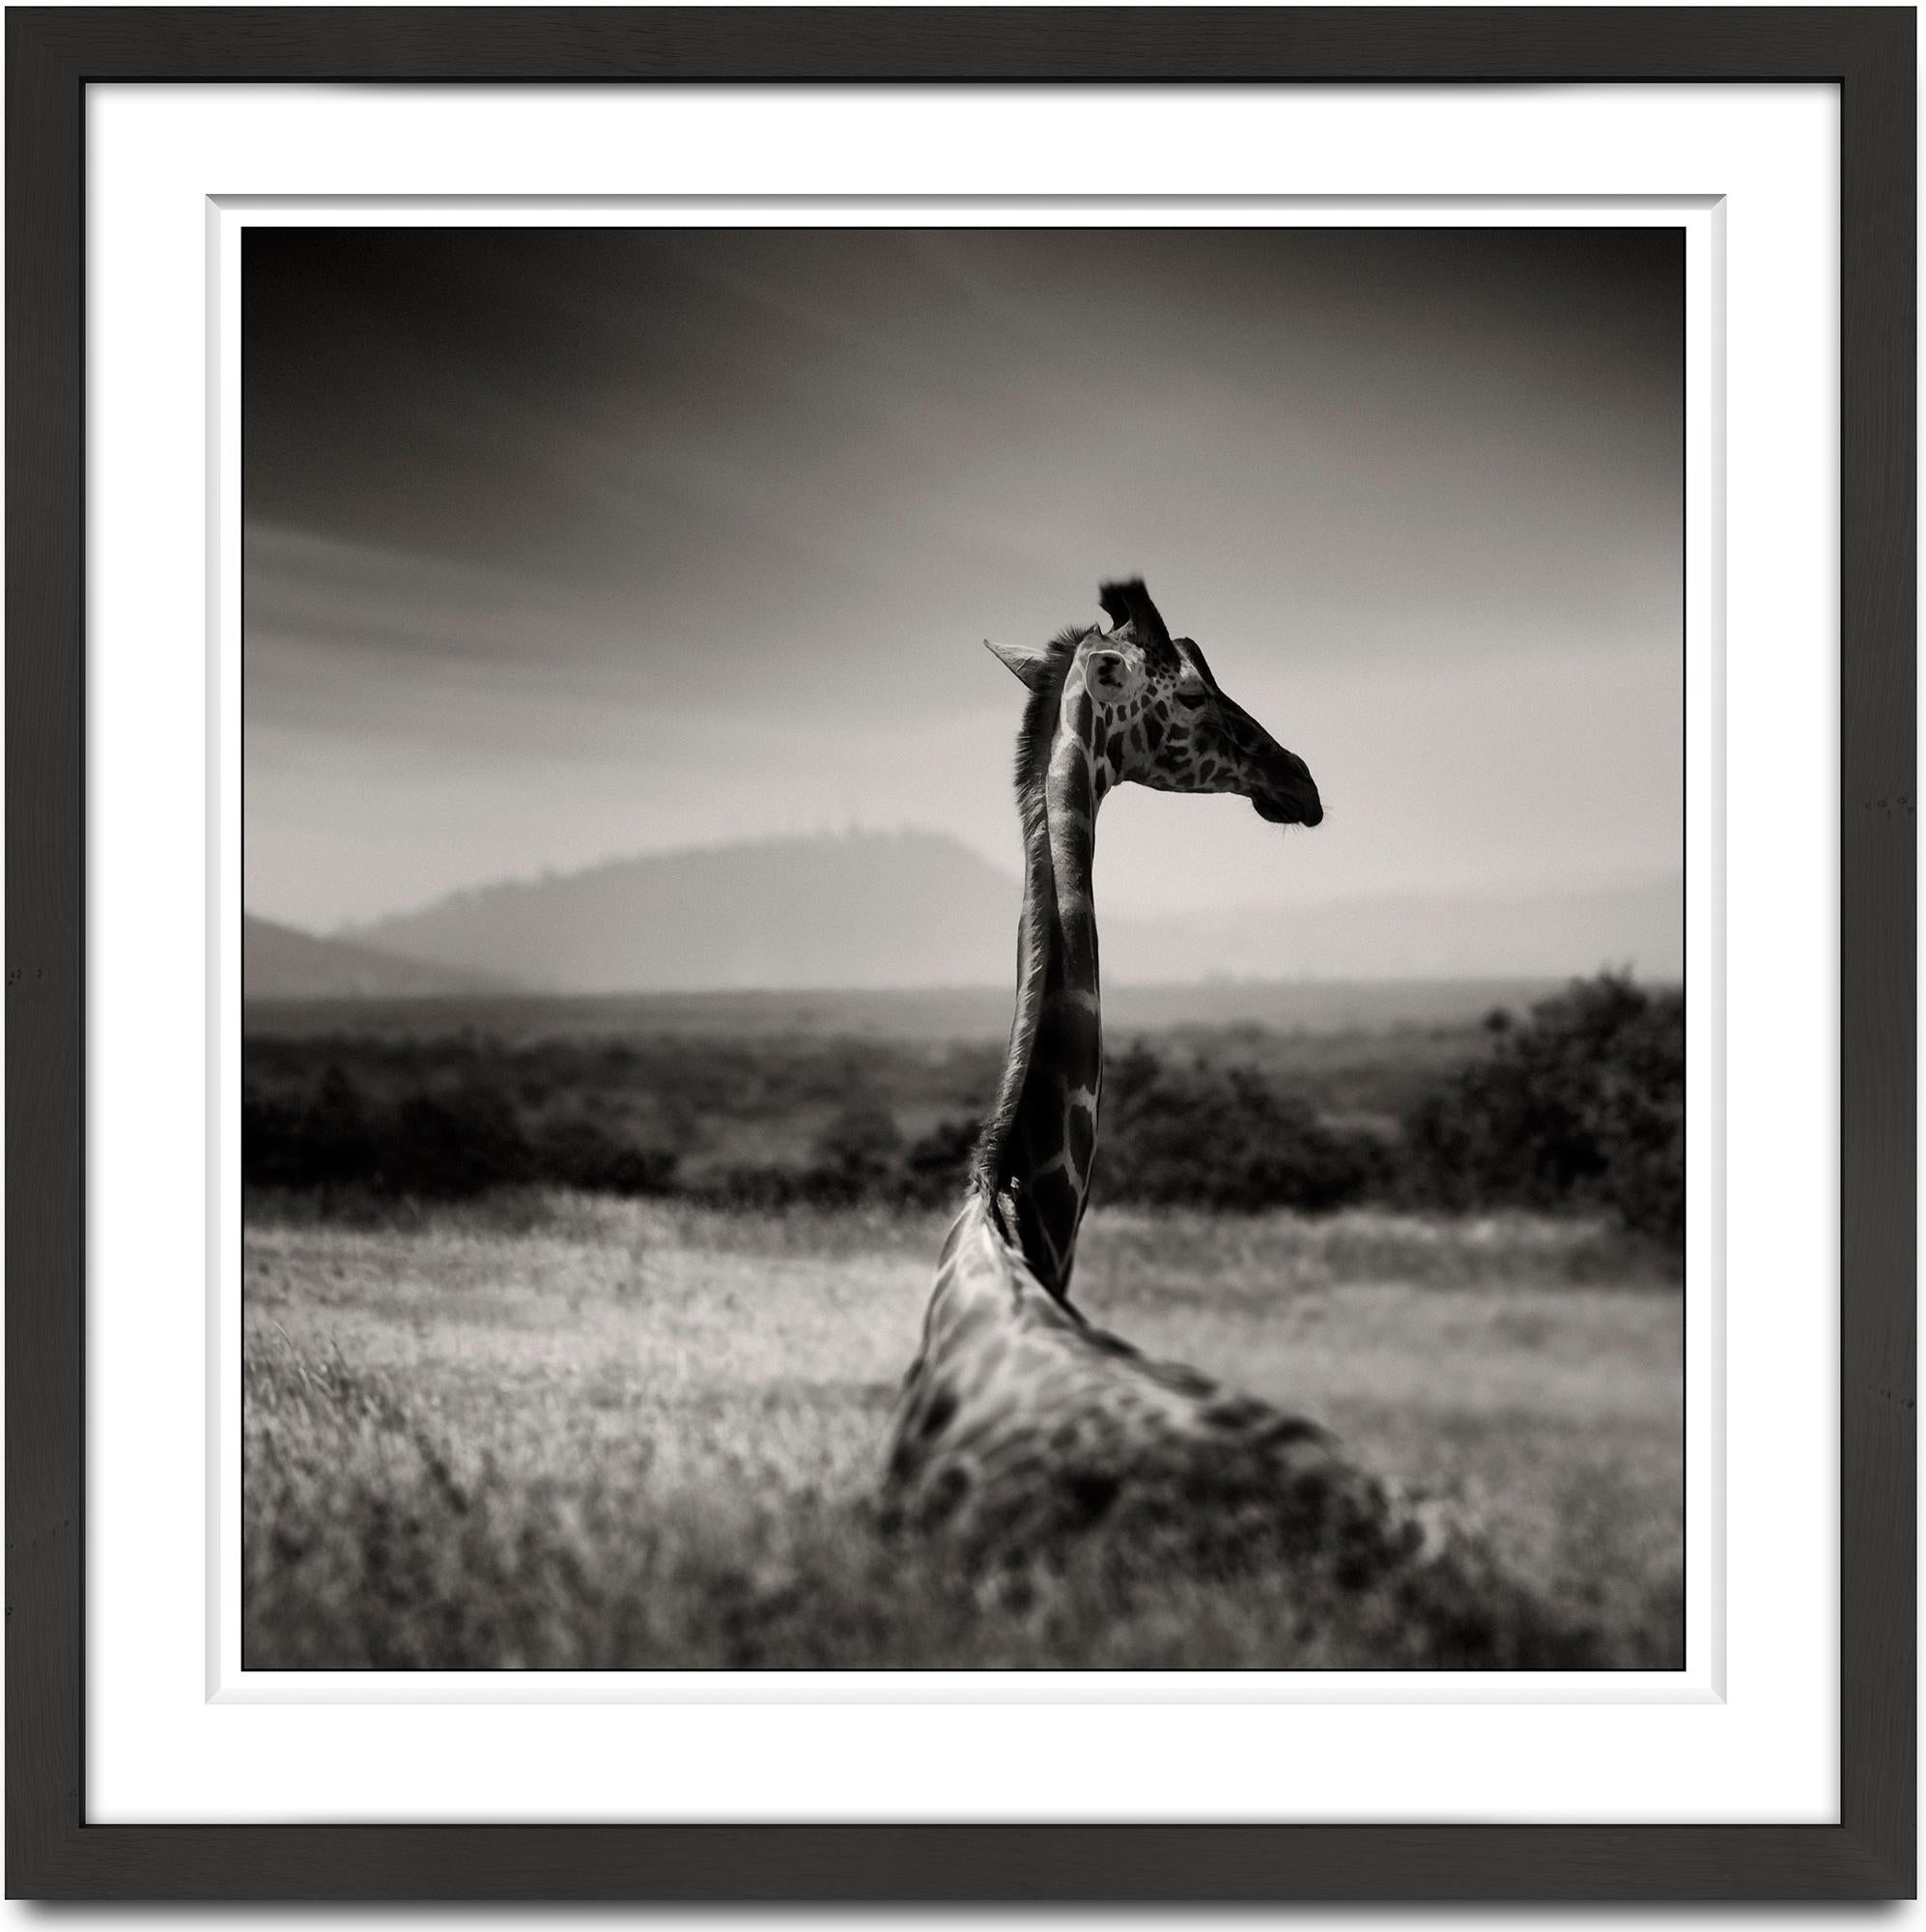 Joachim Schmeisser Landscape Photograph – Lying Giraffen, Tier, Tierwelt, Schwarz-Weiß-Fotografie